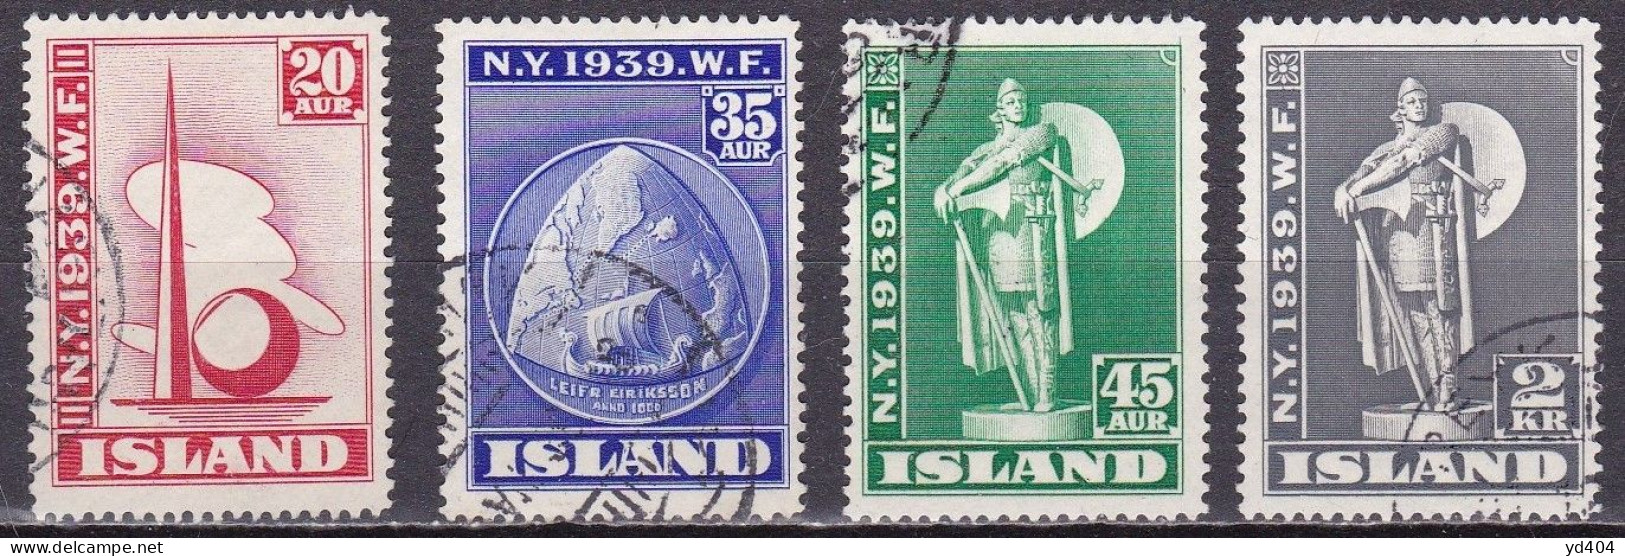 IS038 – ISLANDE – ICELAND – 1939 – NEW-YORK WORLD FAIR – SG # 238/41 USED 195 € - Oblitérés